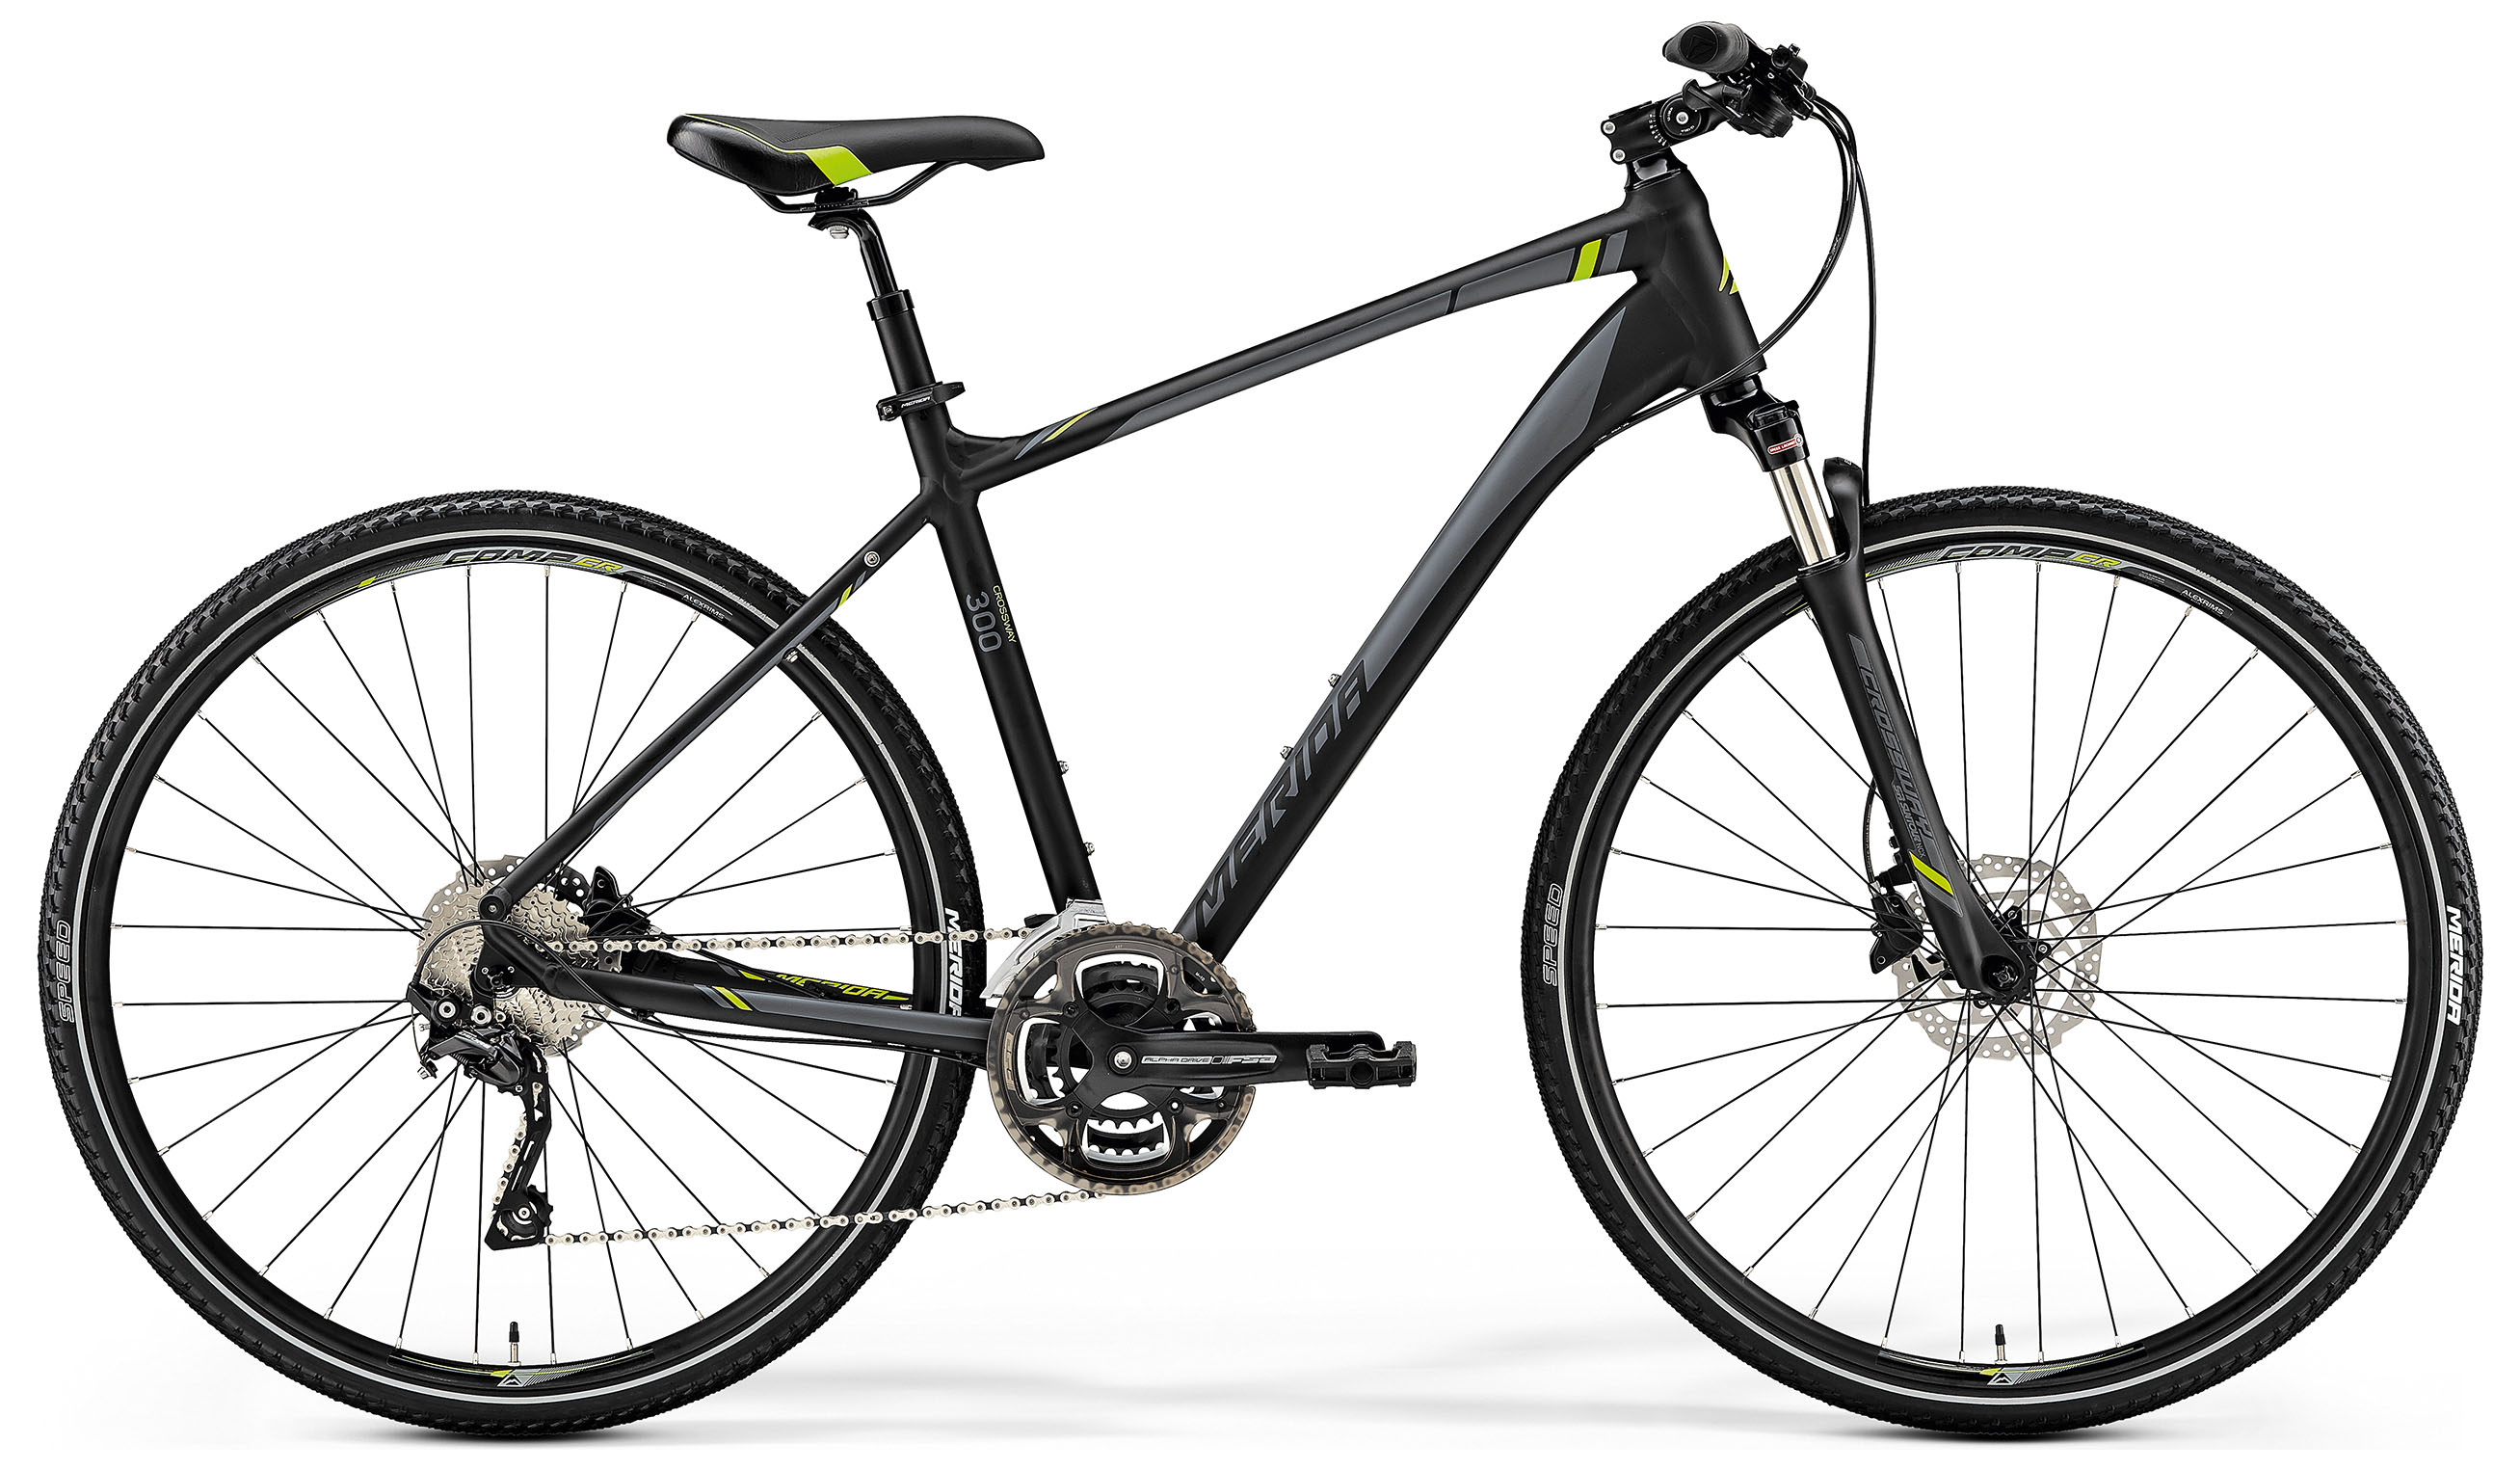  Отзывы о Городском велосипеде Merida Crossway 300 2019